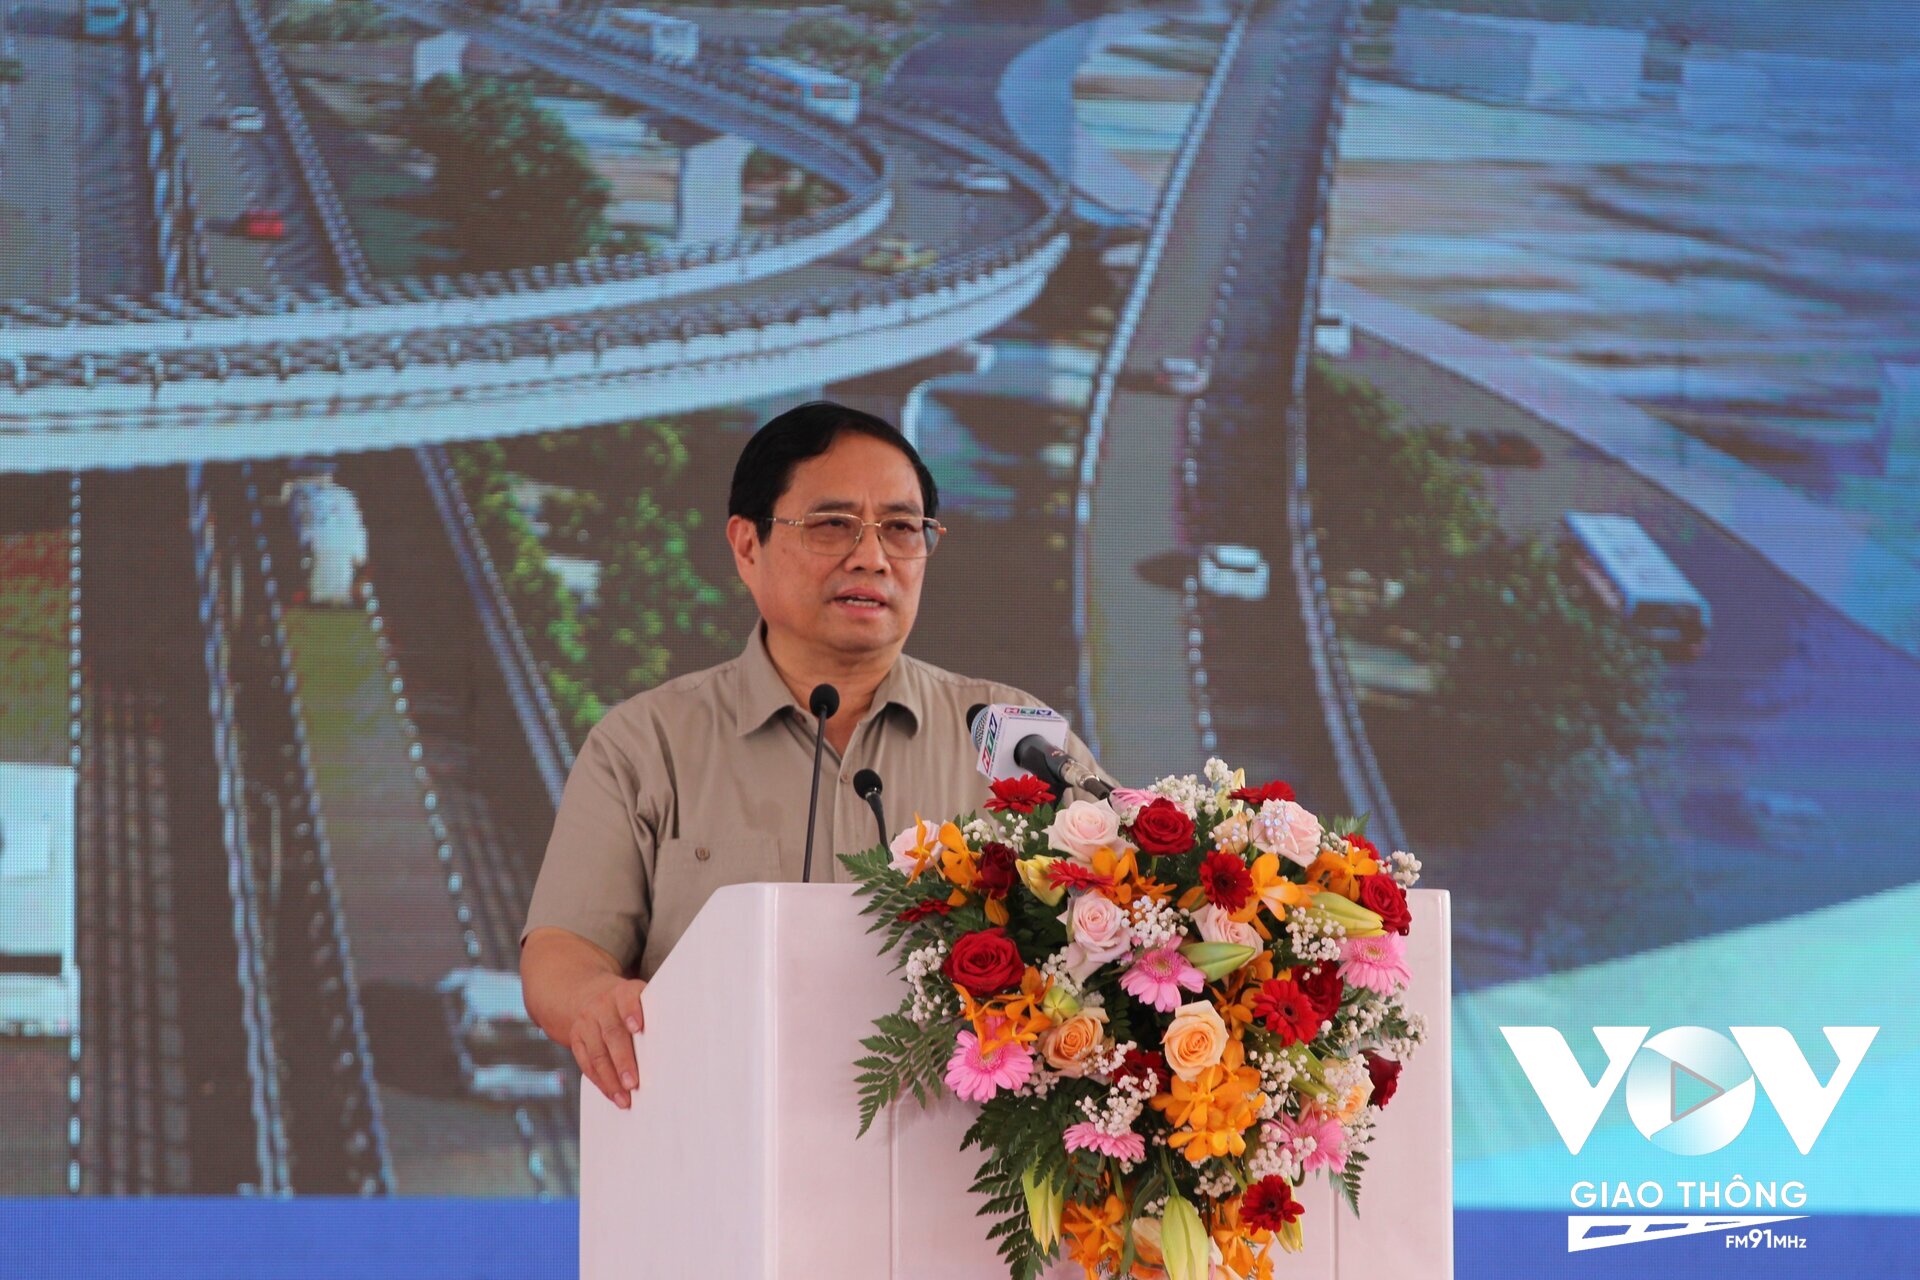 Thủ tướng Phạm Minh Chính phát biểu phát động khởi công các dự án vành đai 3 TP.HCM, cao tốc Khánh Hòa - Buôn Ma Thuột giai đoạn 1 và cao tốc Biên Hòa - Vũng Tàu giai đoạn 1